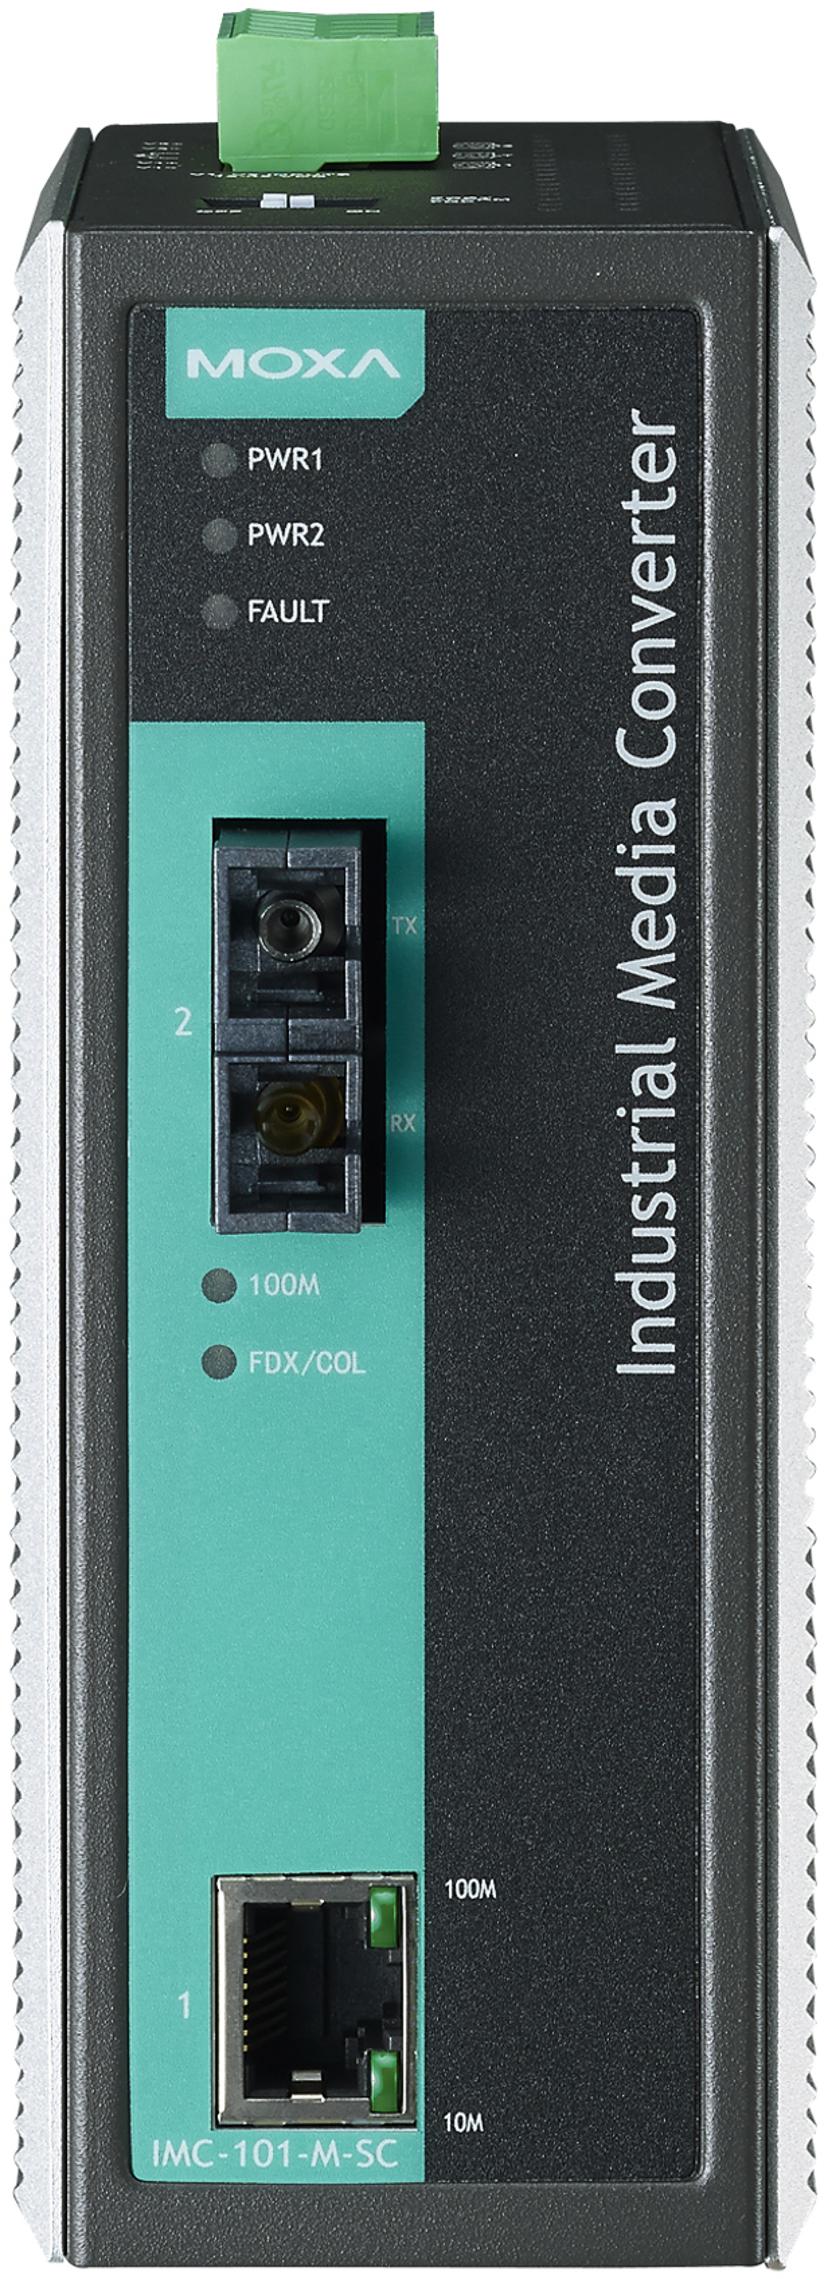 Moxa IMC-101-M-SC Industrial Fiber Media Converter